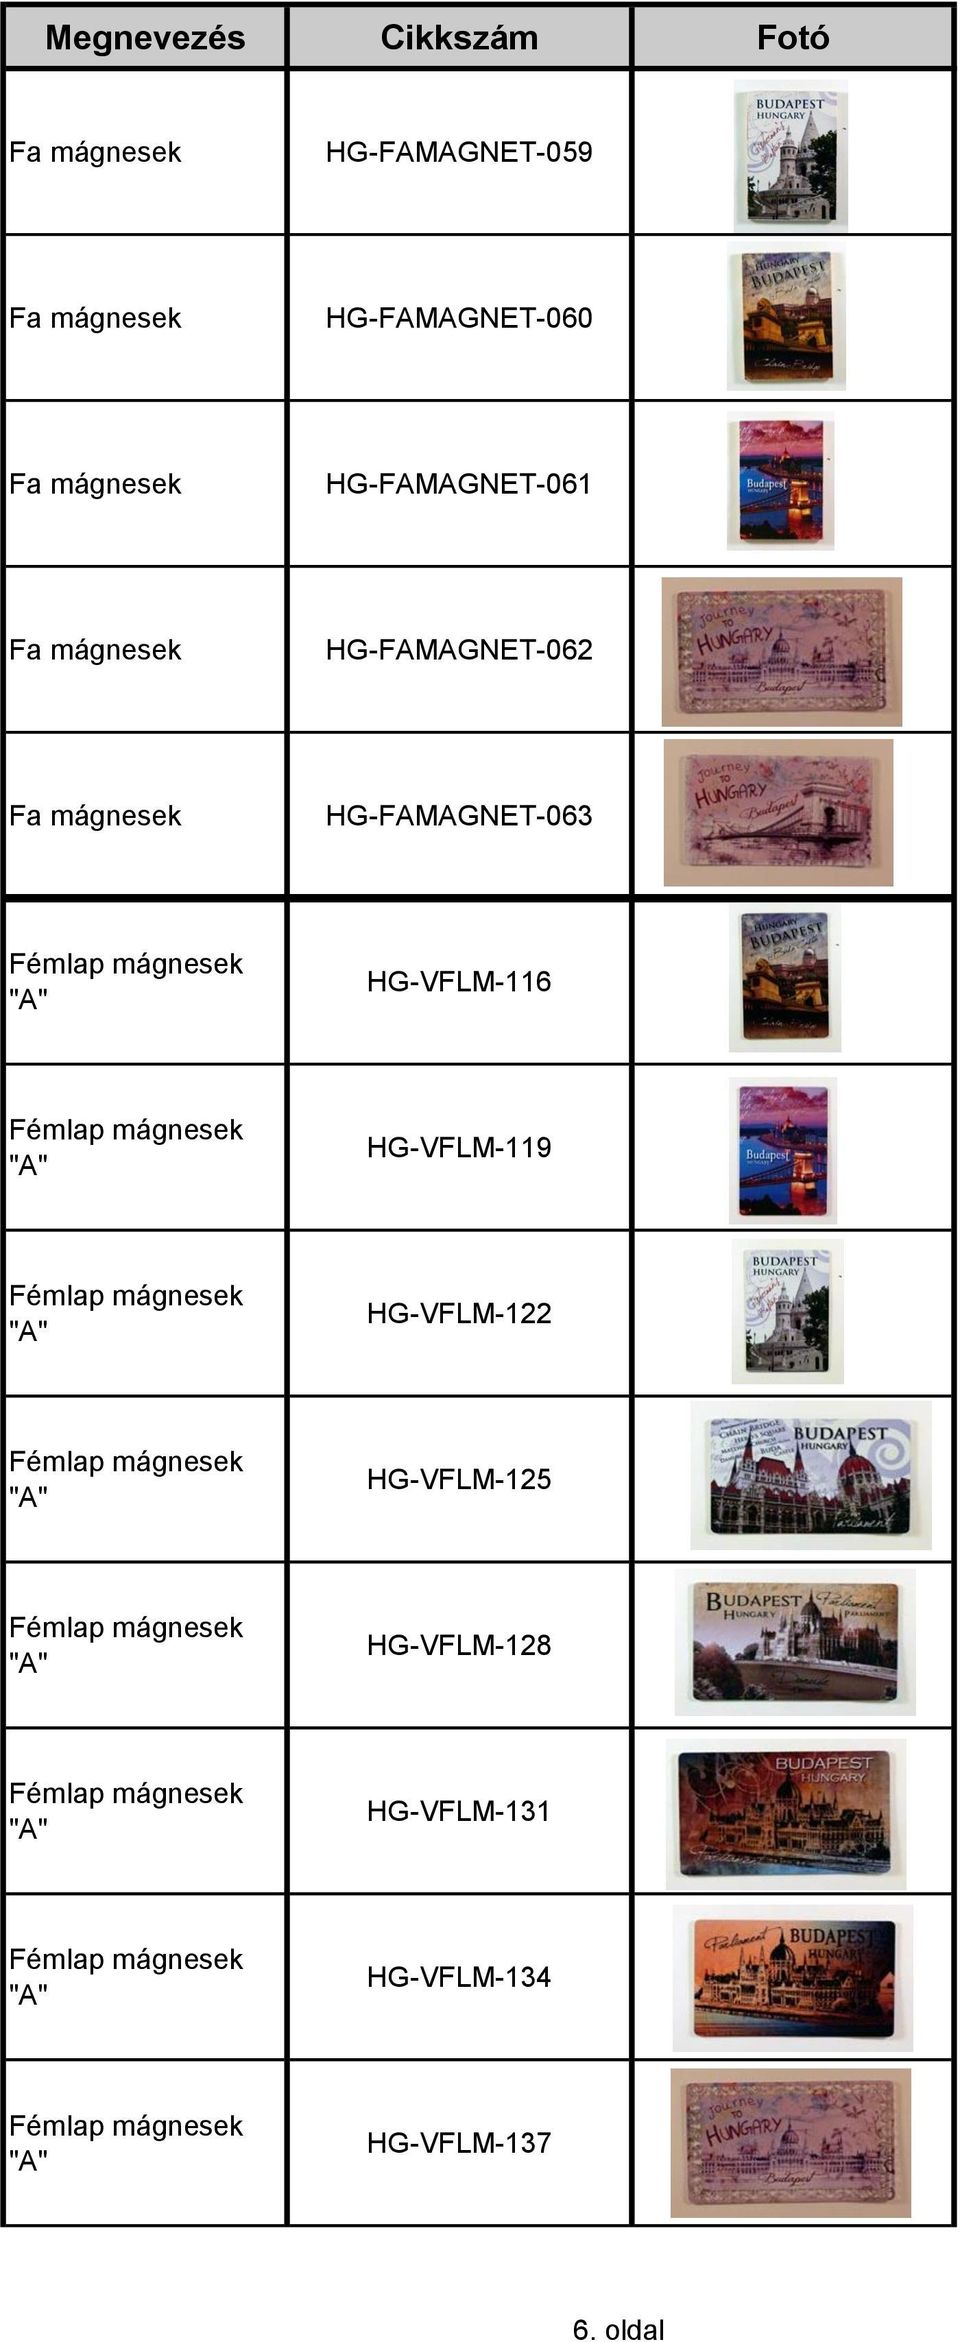 HG-FAMAGNET-063 "A" HG-VFLM-116 "A" HG-VFLM-119 "A" HG-VFLM-122 "A"